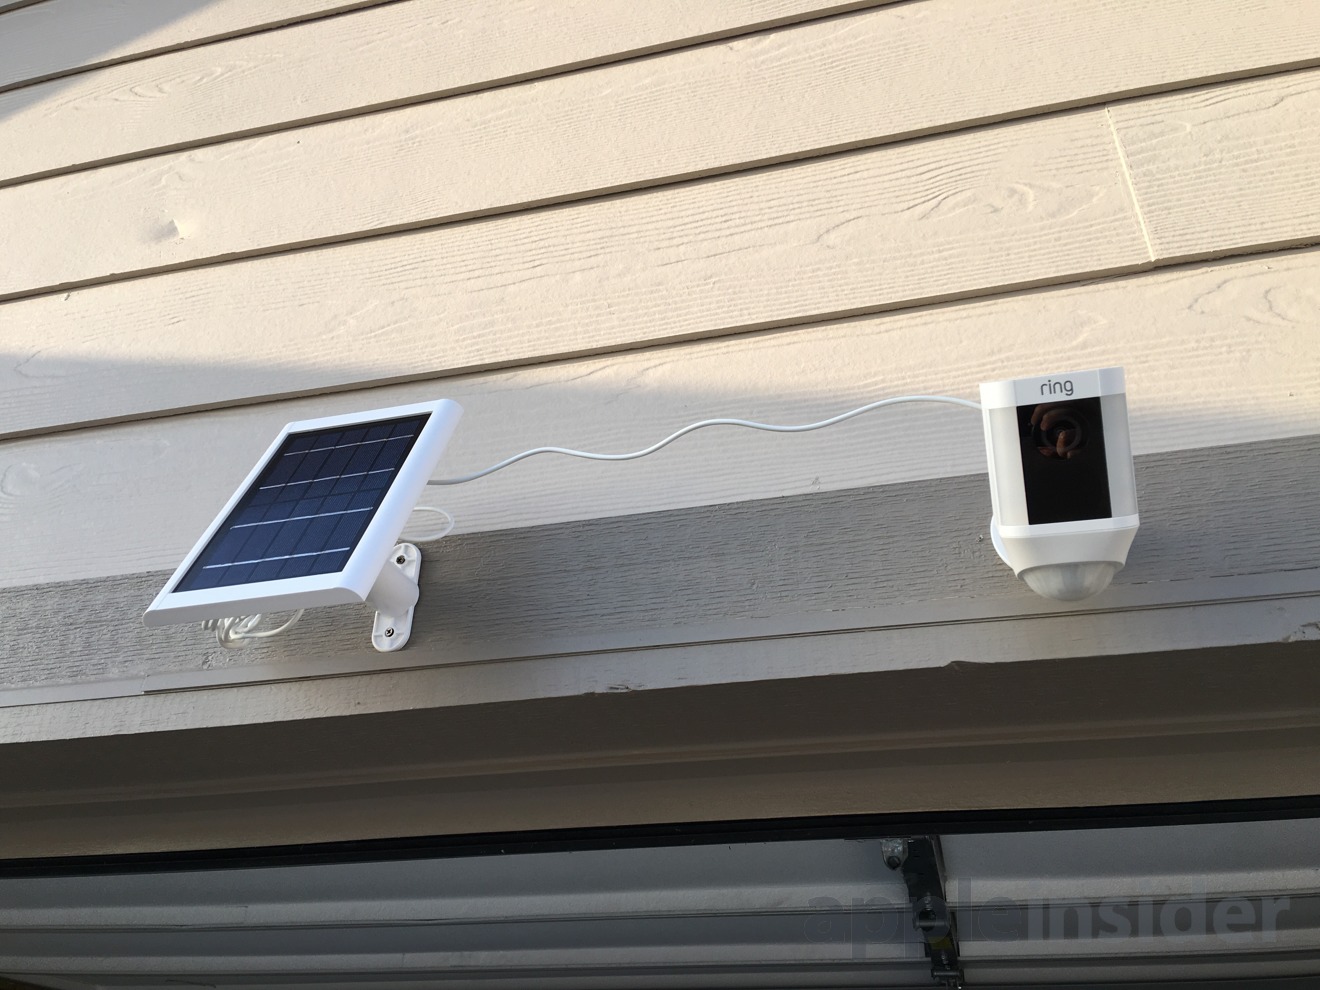 ring outdoor solar camera